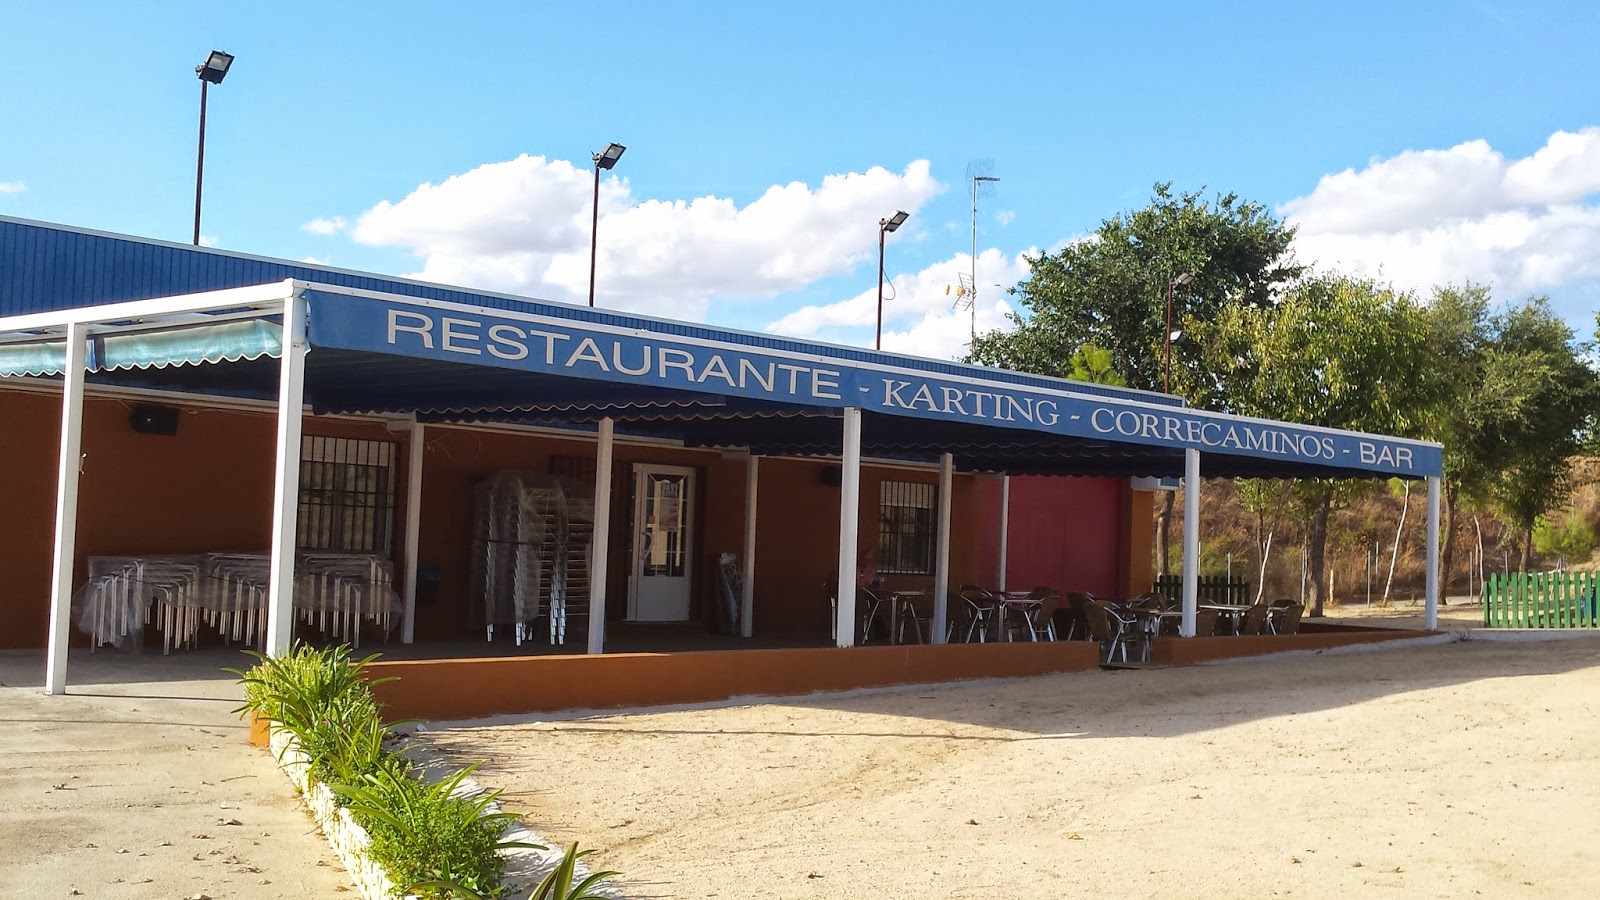 Restaurante Karting Correcaminos